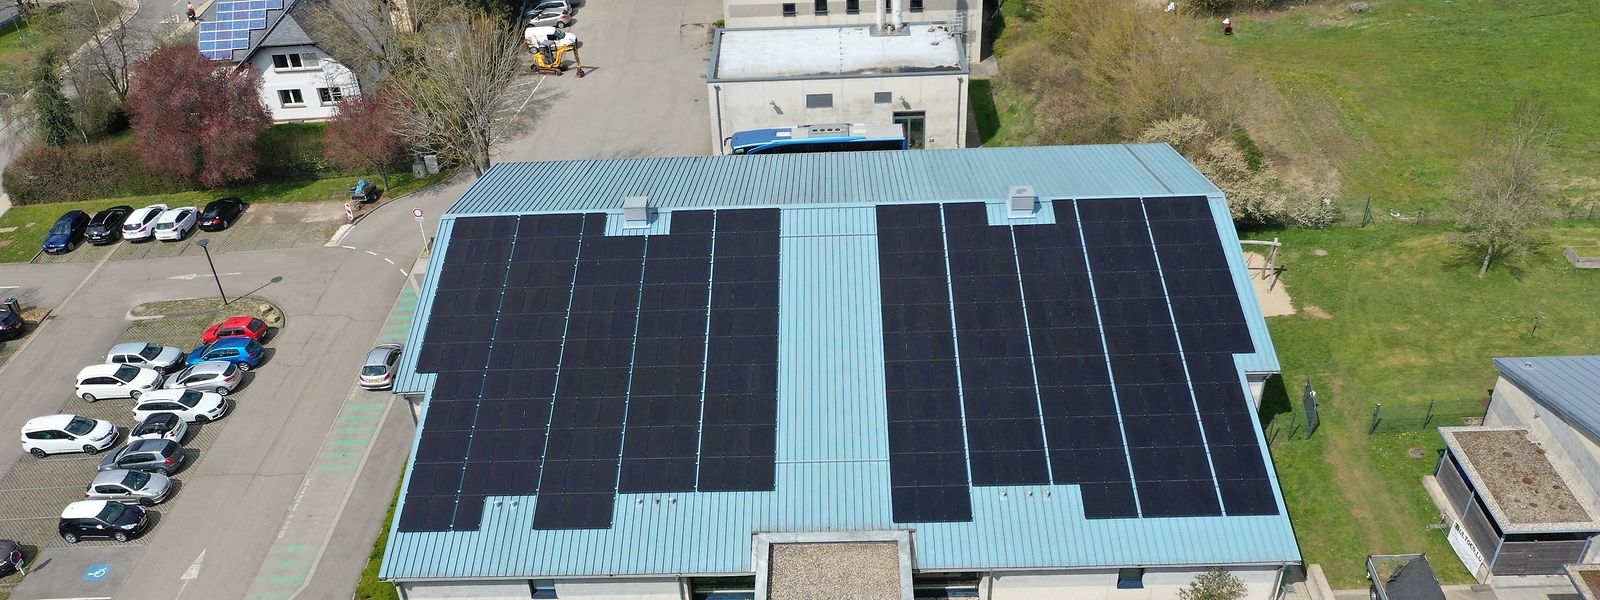 Mehr als 300 Solarmodule produzieren umweltfreundlichen Strom. Die Mitte des Hallendaches musste aus statischen Gründen frei bleiben.